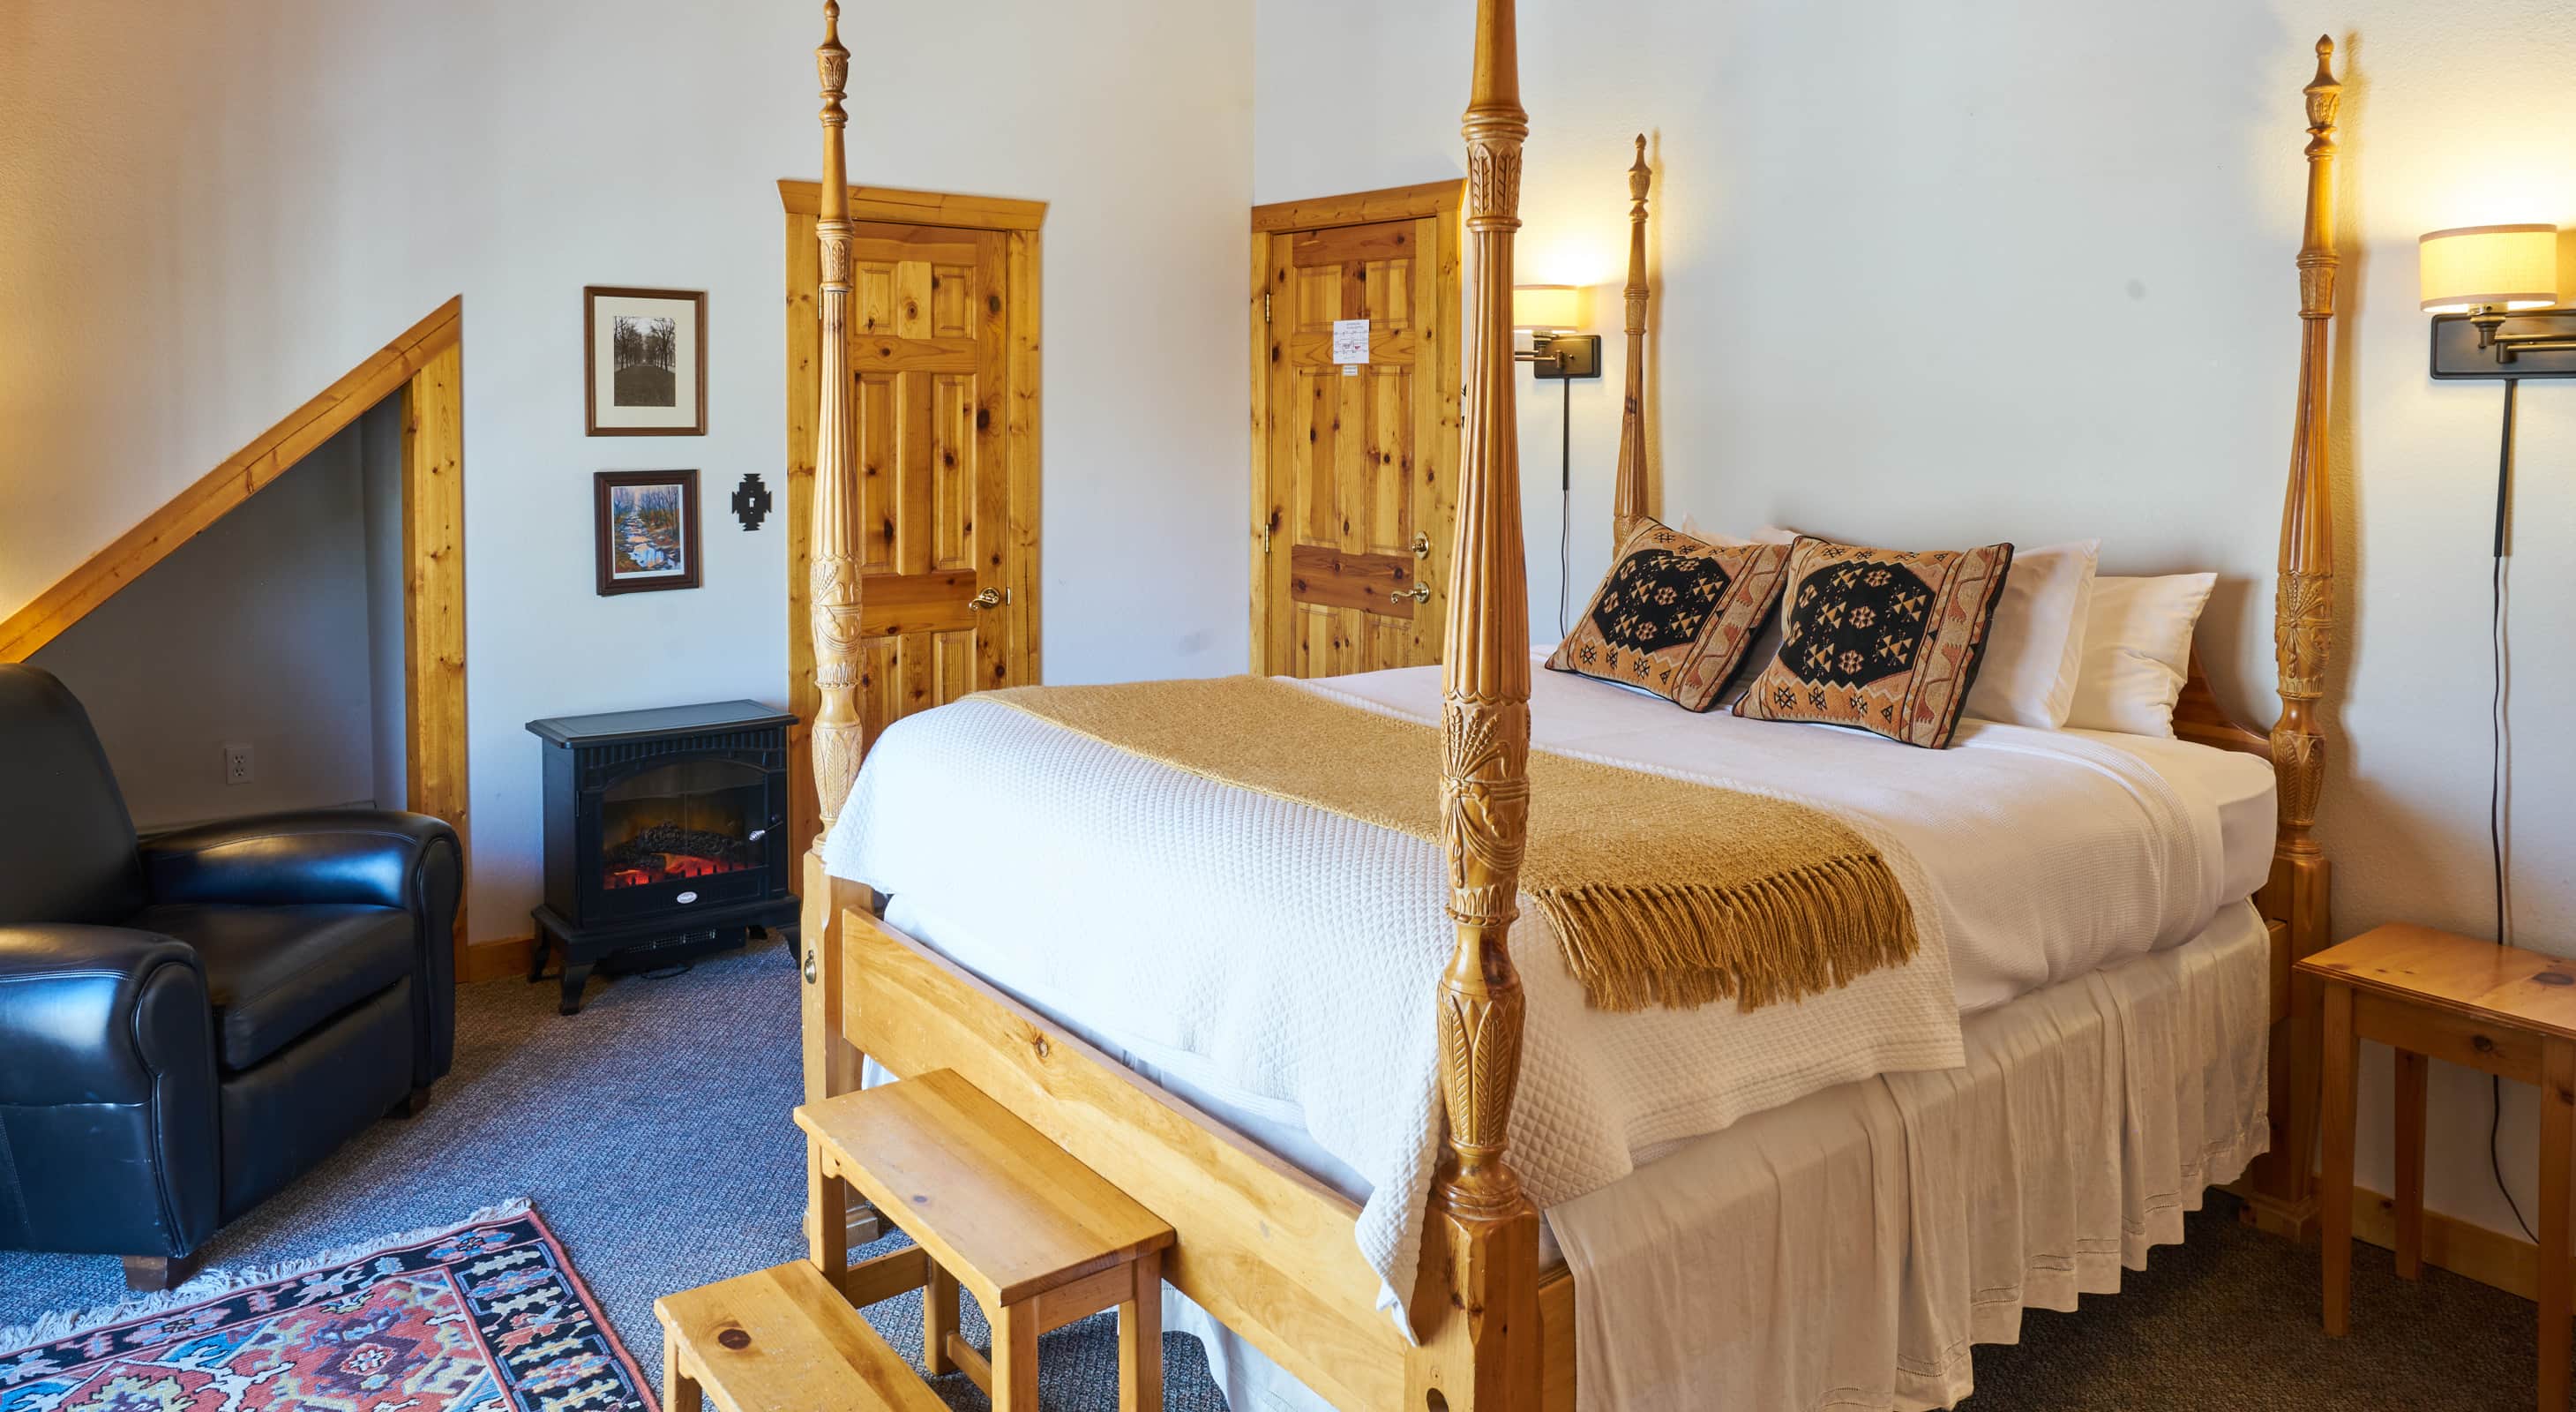 Queen Bed for a romantic getaway in Colorado